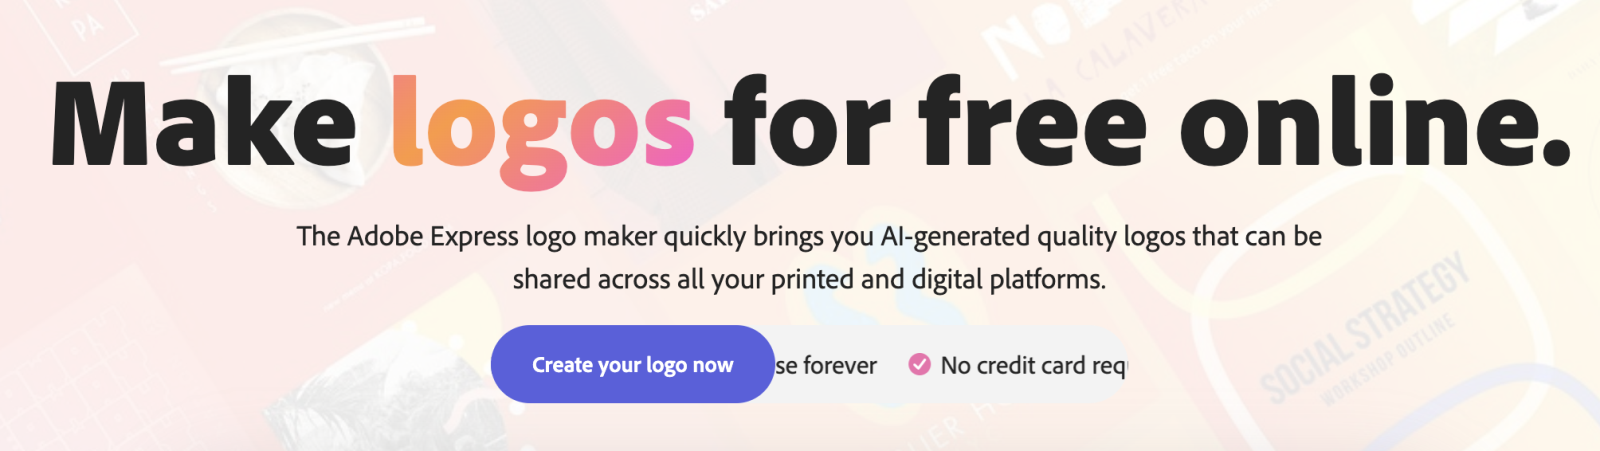 3 công cụ thiết kế logo bằng AI hoàn toàn miễn phí - Fptshop.com.vn